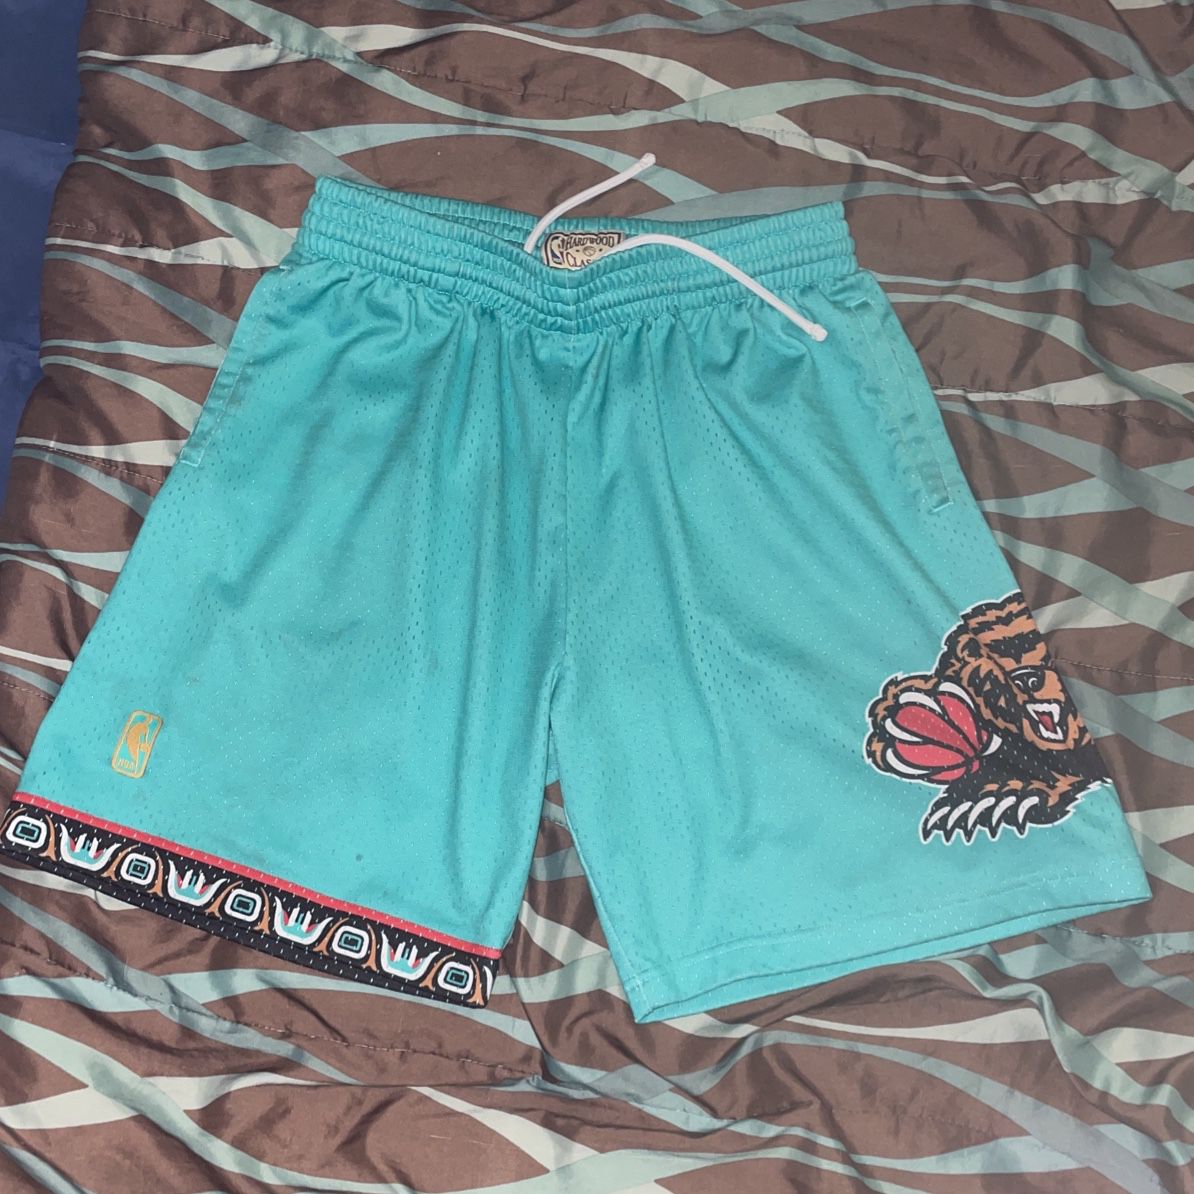 Retro Memphis Grizzlies Shorts for Sale in Phoenix, AZ - OfferUp